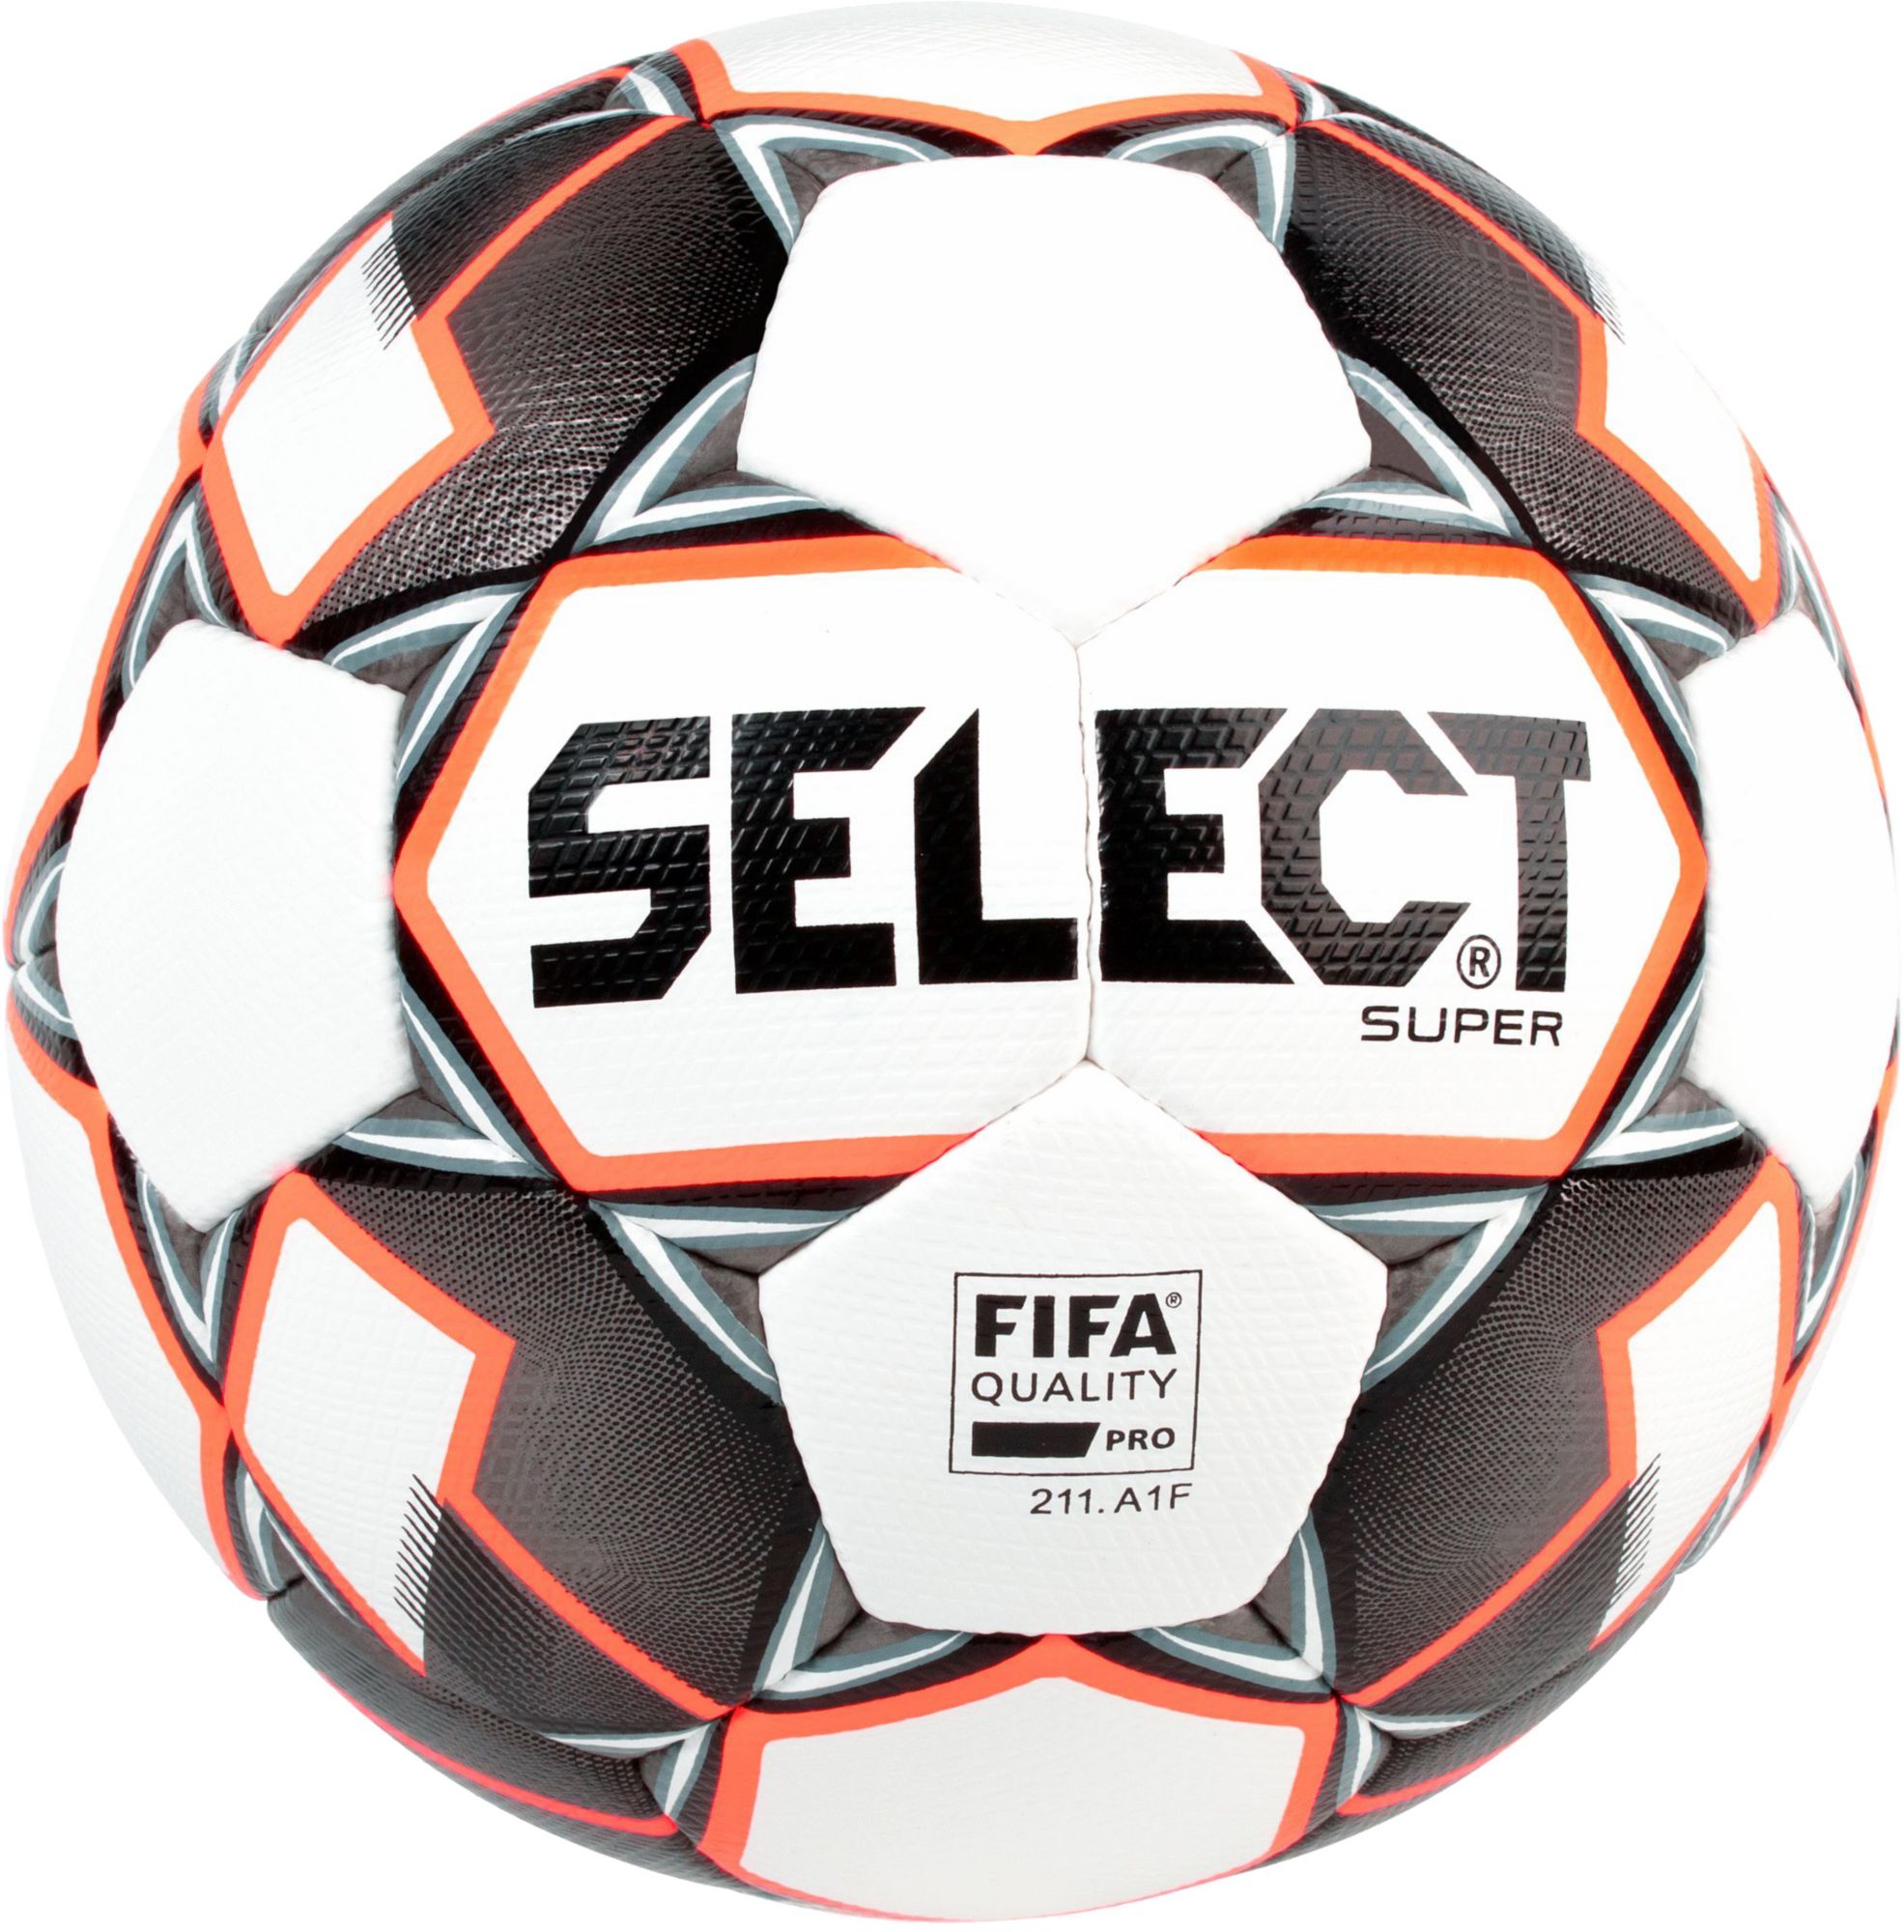 official fifa ball